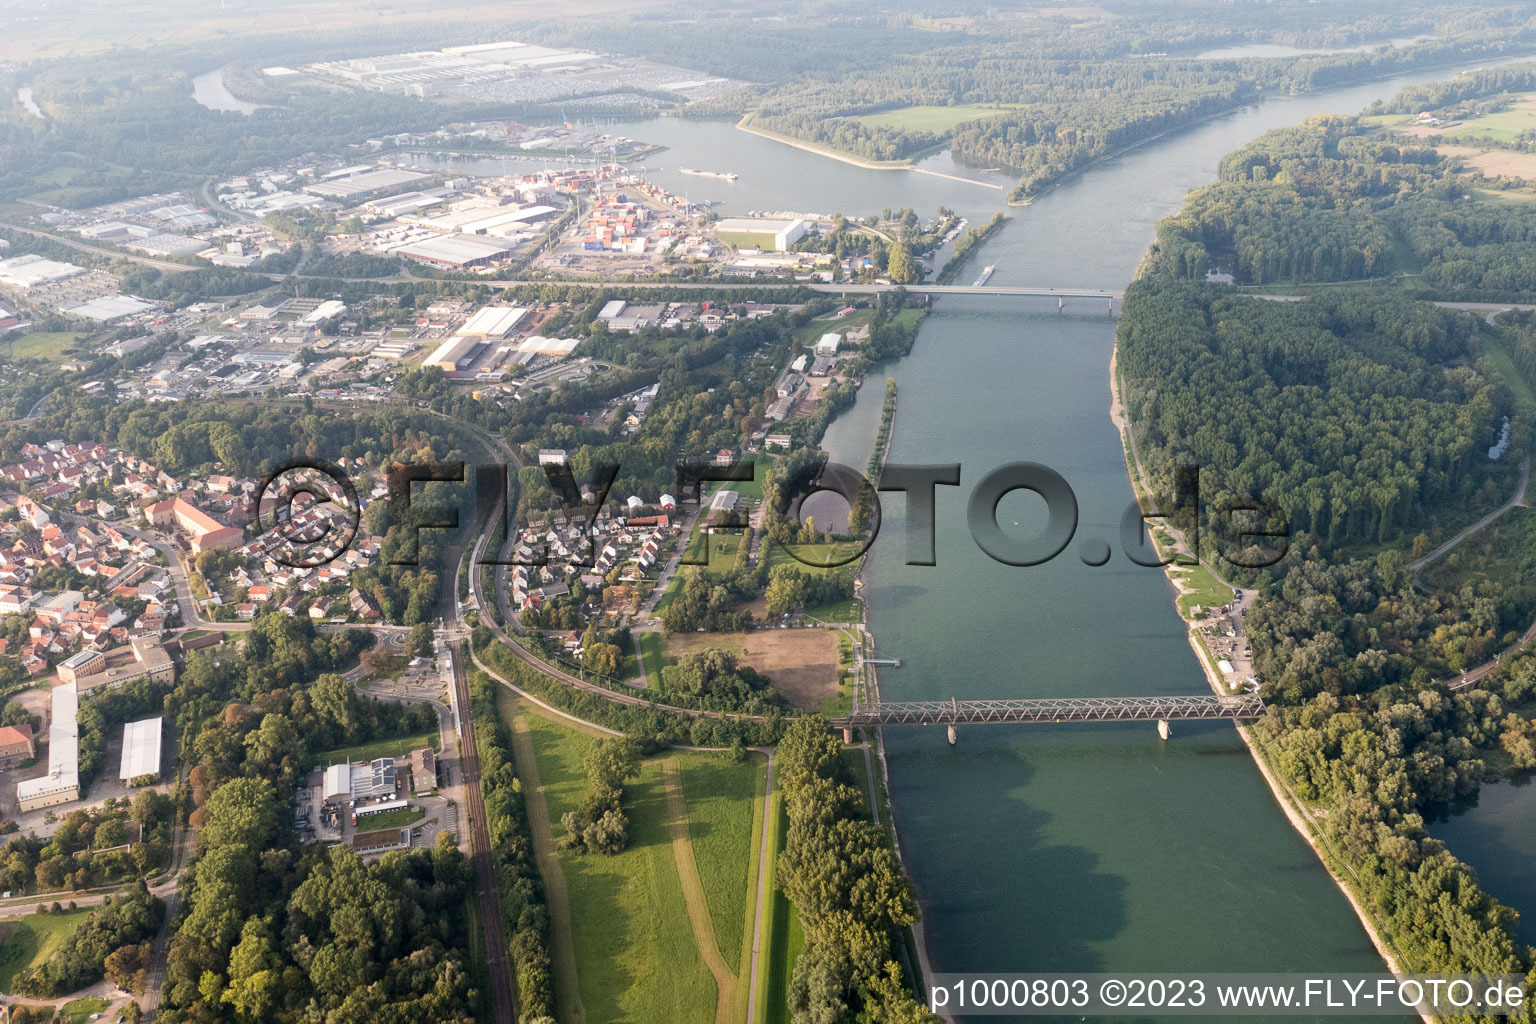 Germersheim im Bundesland Rheinland-Pfalz, Deutschland von der Drohne aus gesehen